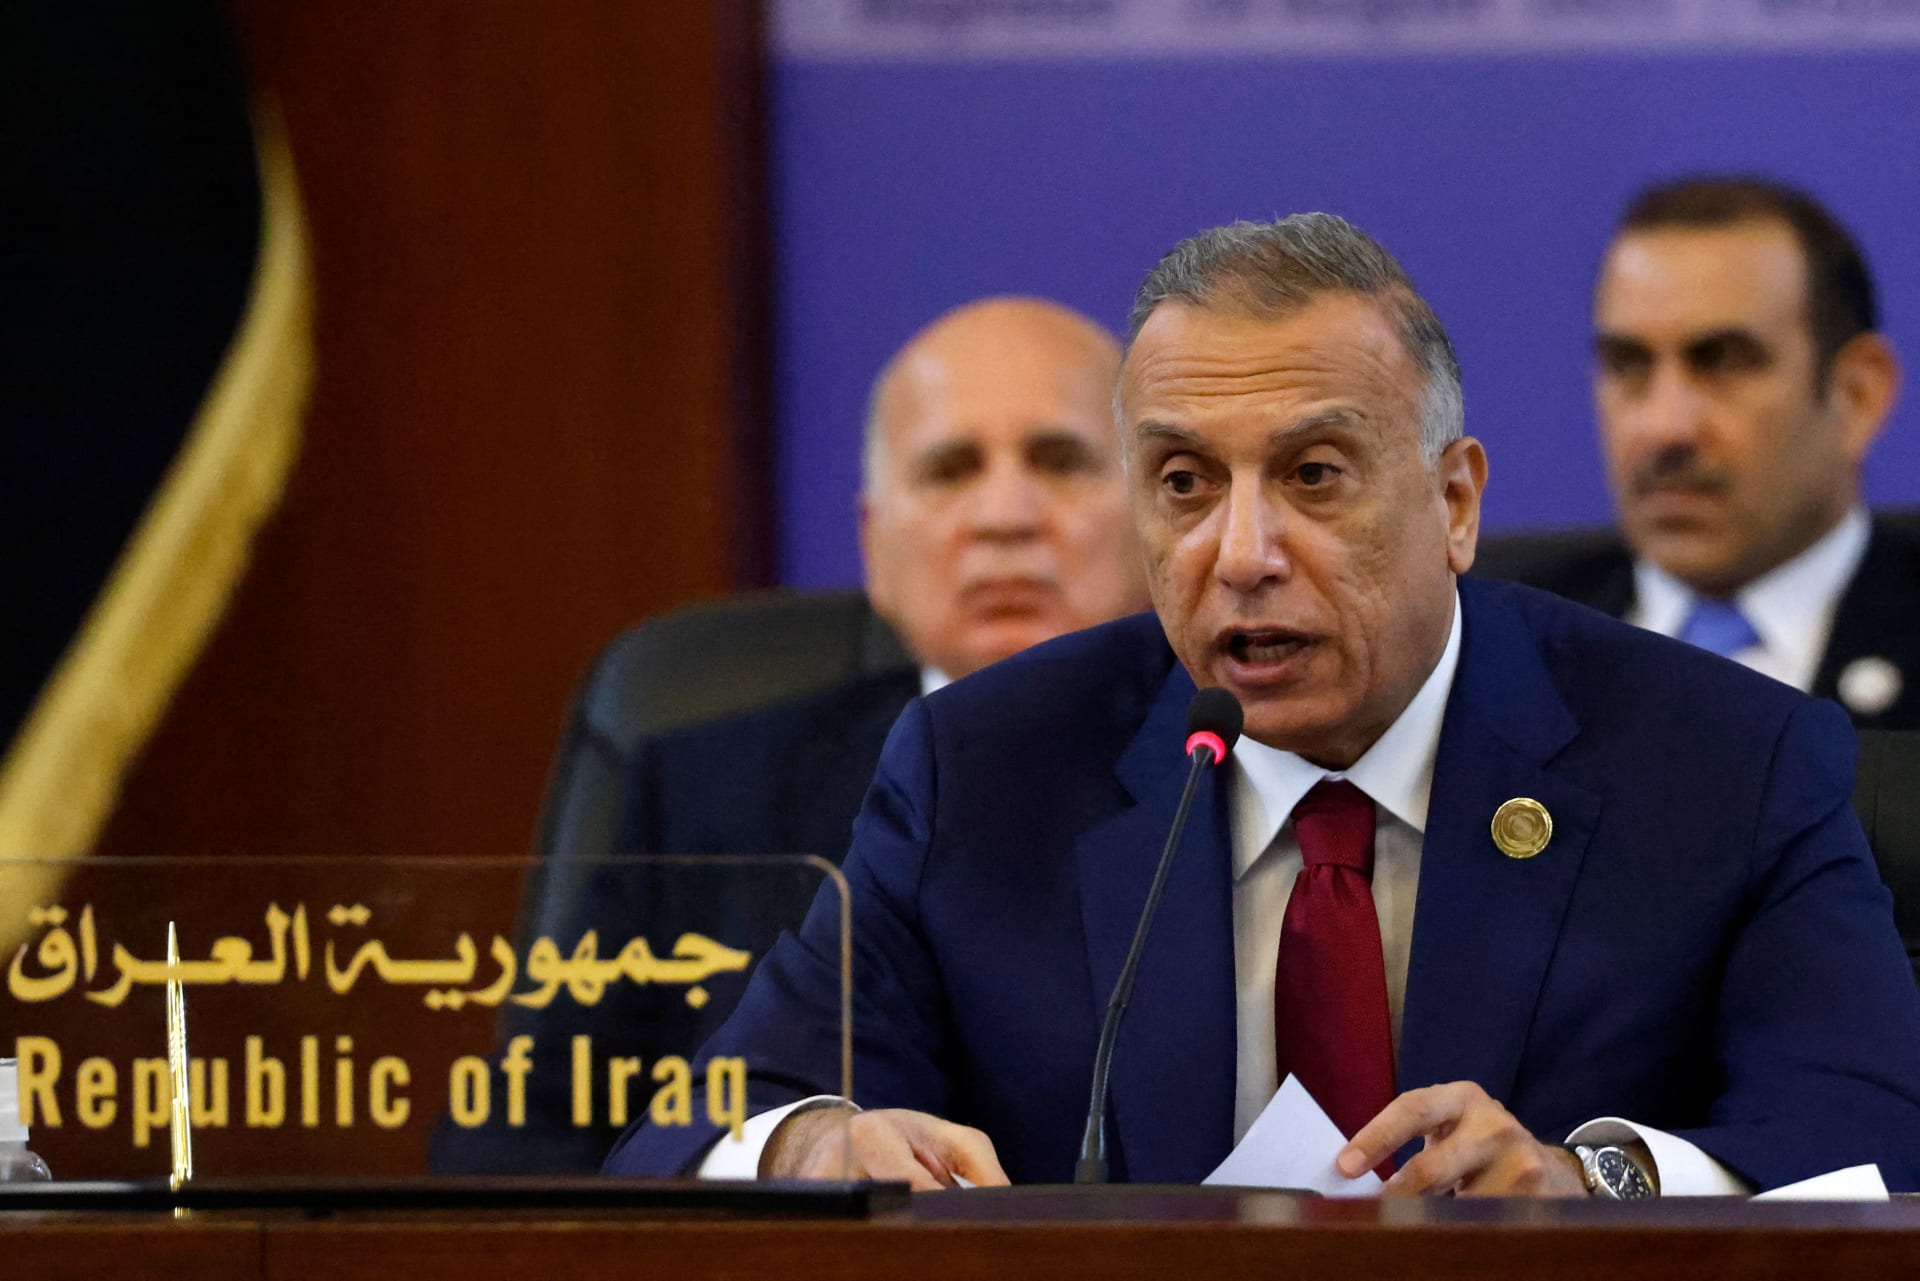 رئيس وزراء العراق: اتفقنا مع إيران على التهدئة في المنطقة ودعم الهدنة في اليمن